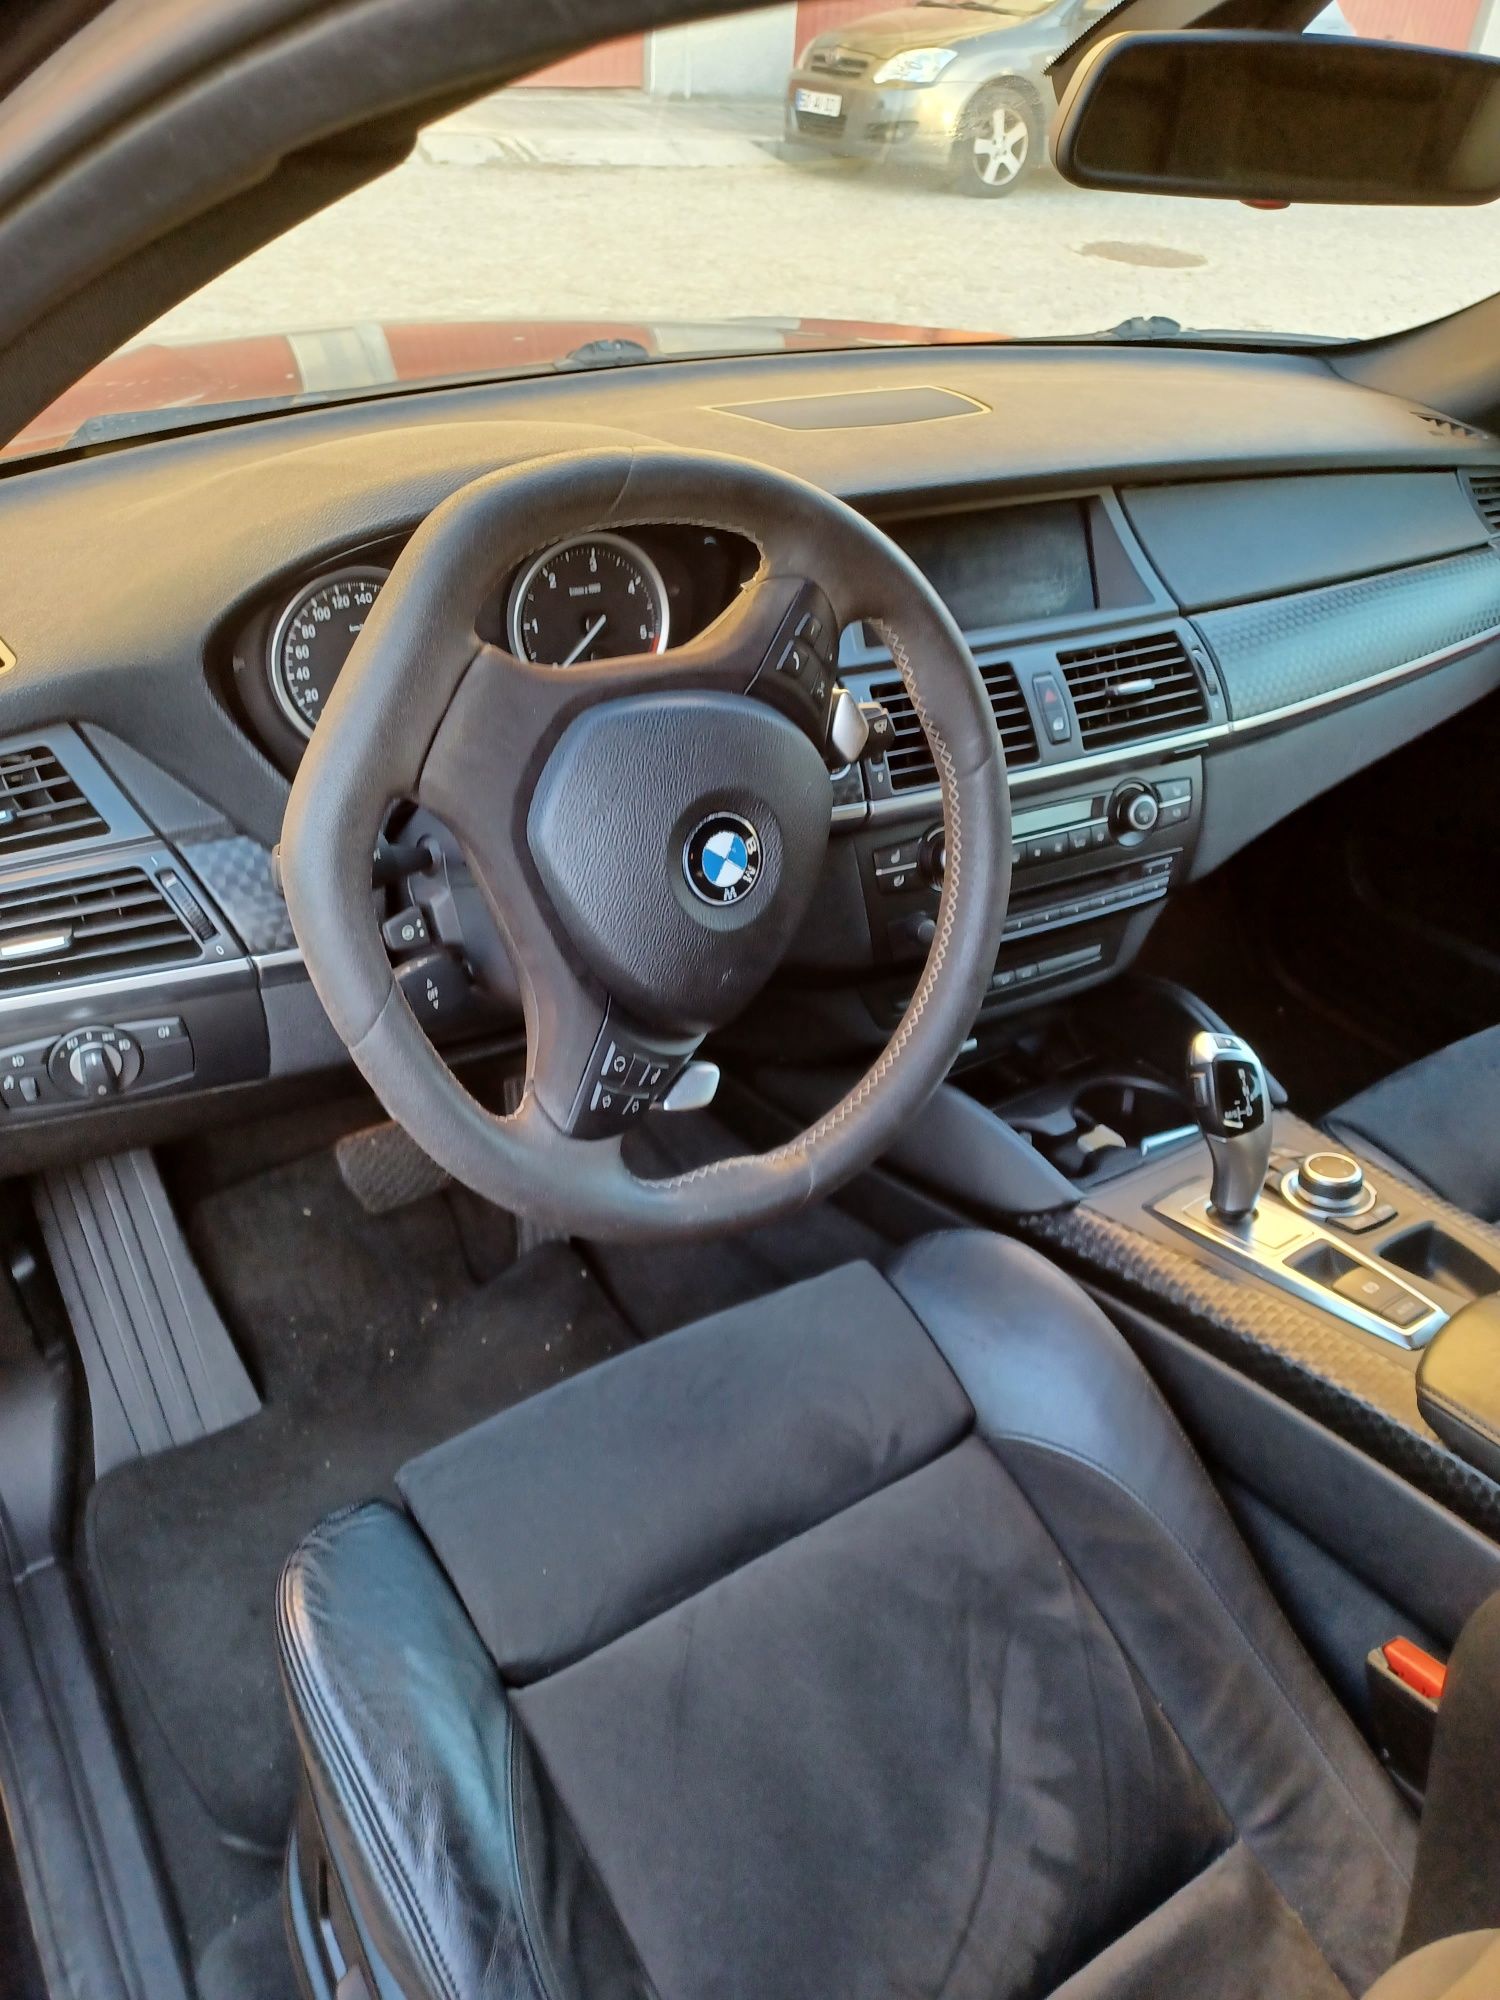 BMW X6 40D XDrive 3.0 Bi Turbo 306cv  c/ novo c/ garantia